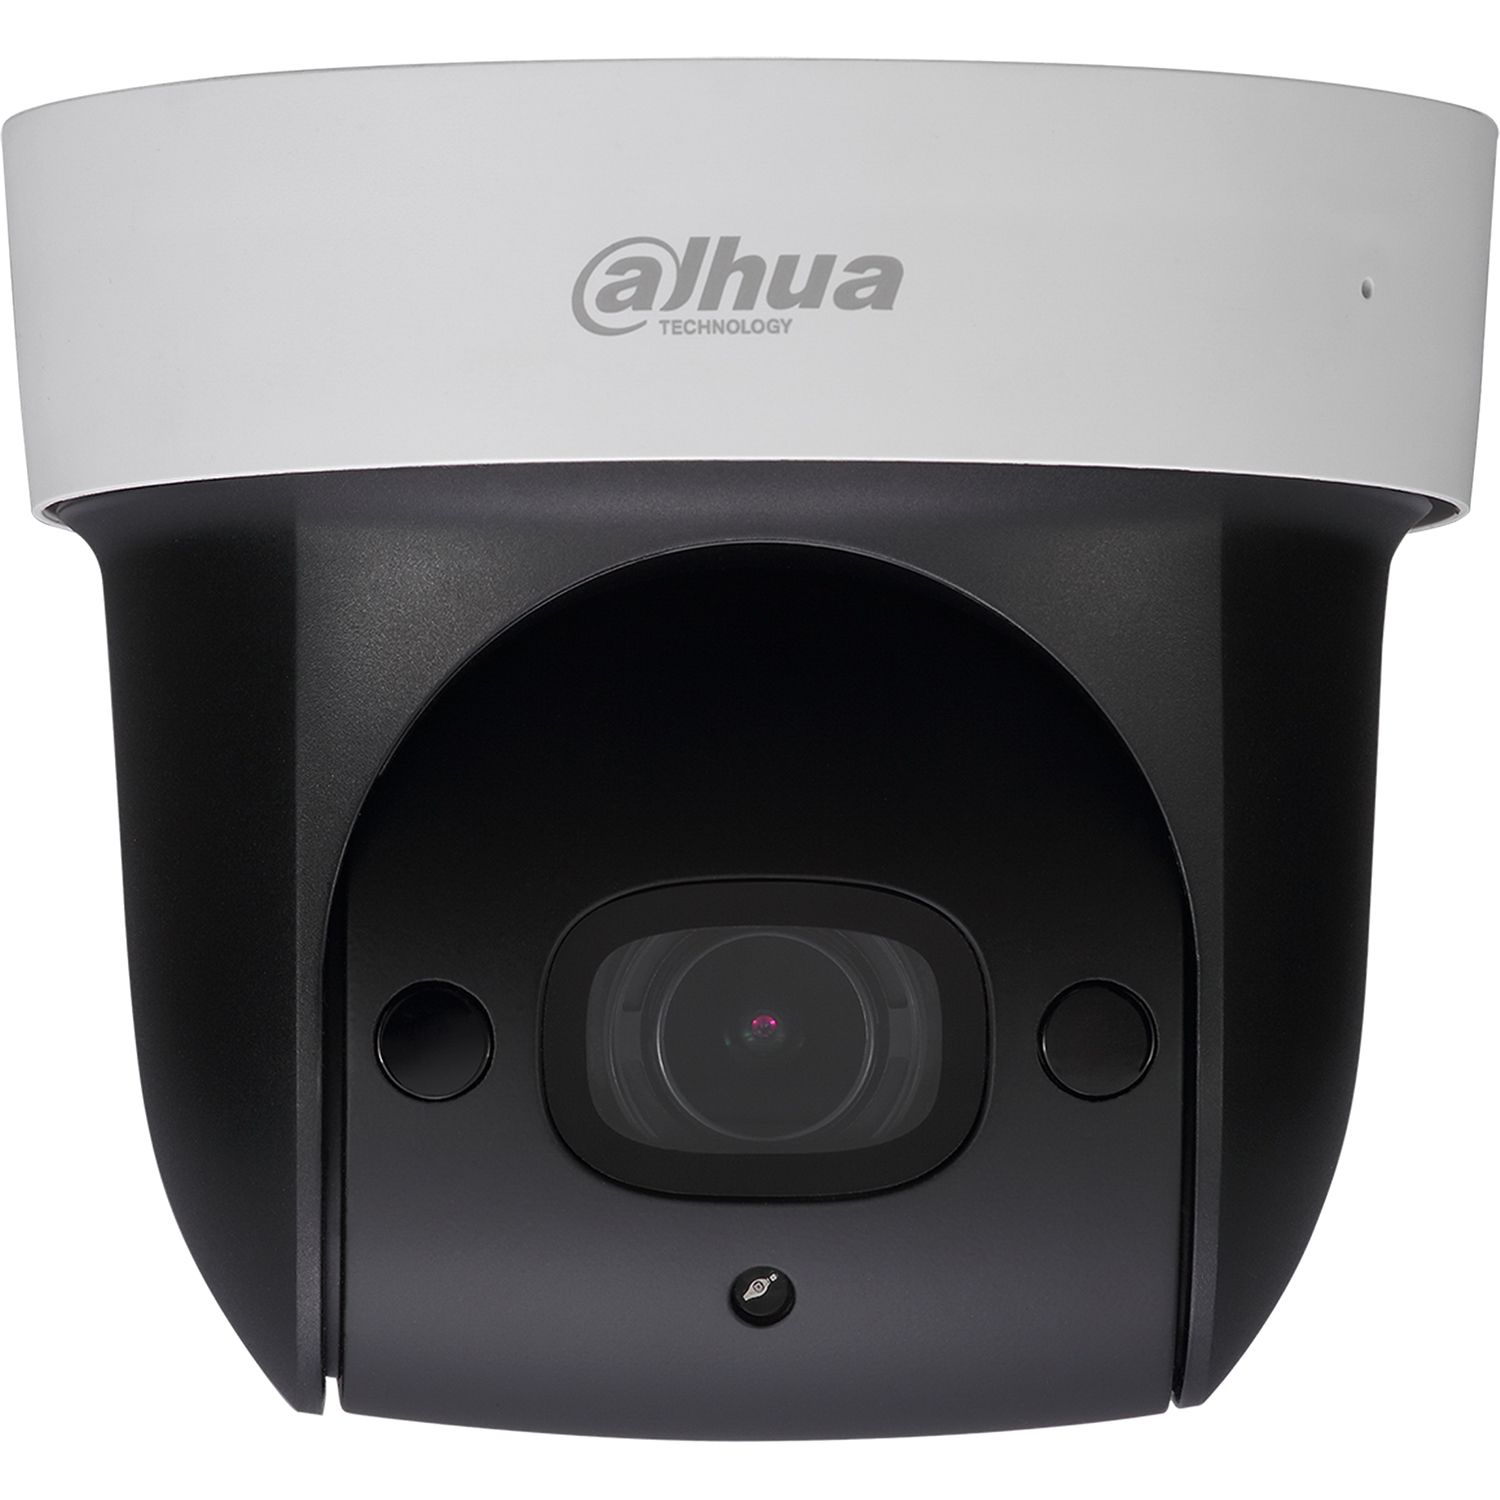 видеокамера ip hikvision ds 2cd2043g2 iu 6mm 6 6мм ная корп белый Камера видеонаблюдения IP Dahua DH-SD29204UE-GN 2.7-11мм цв. корп.:белый